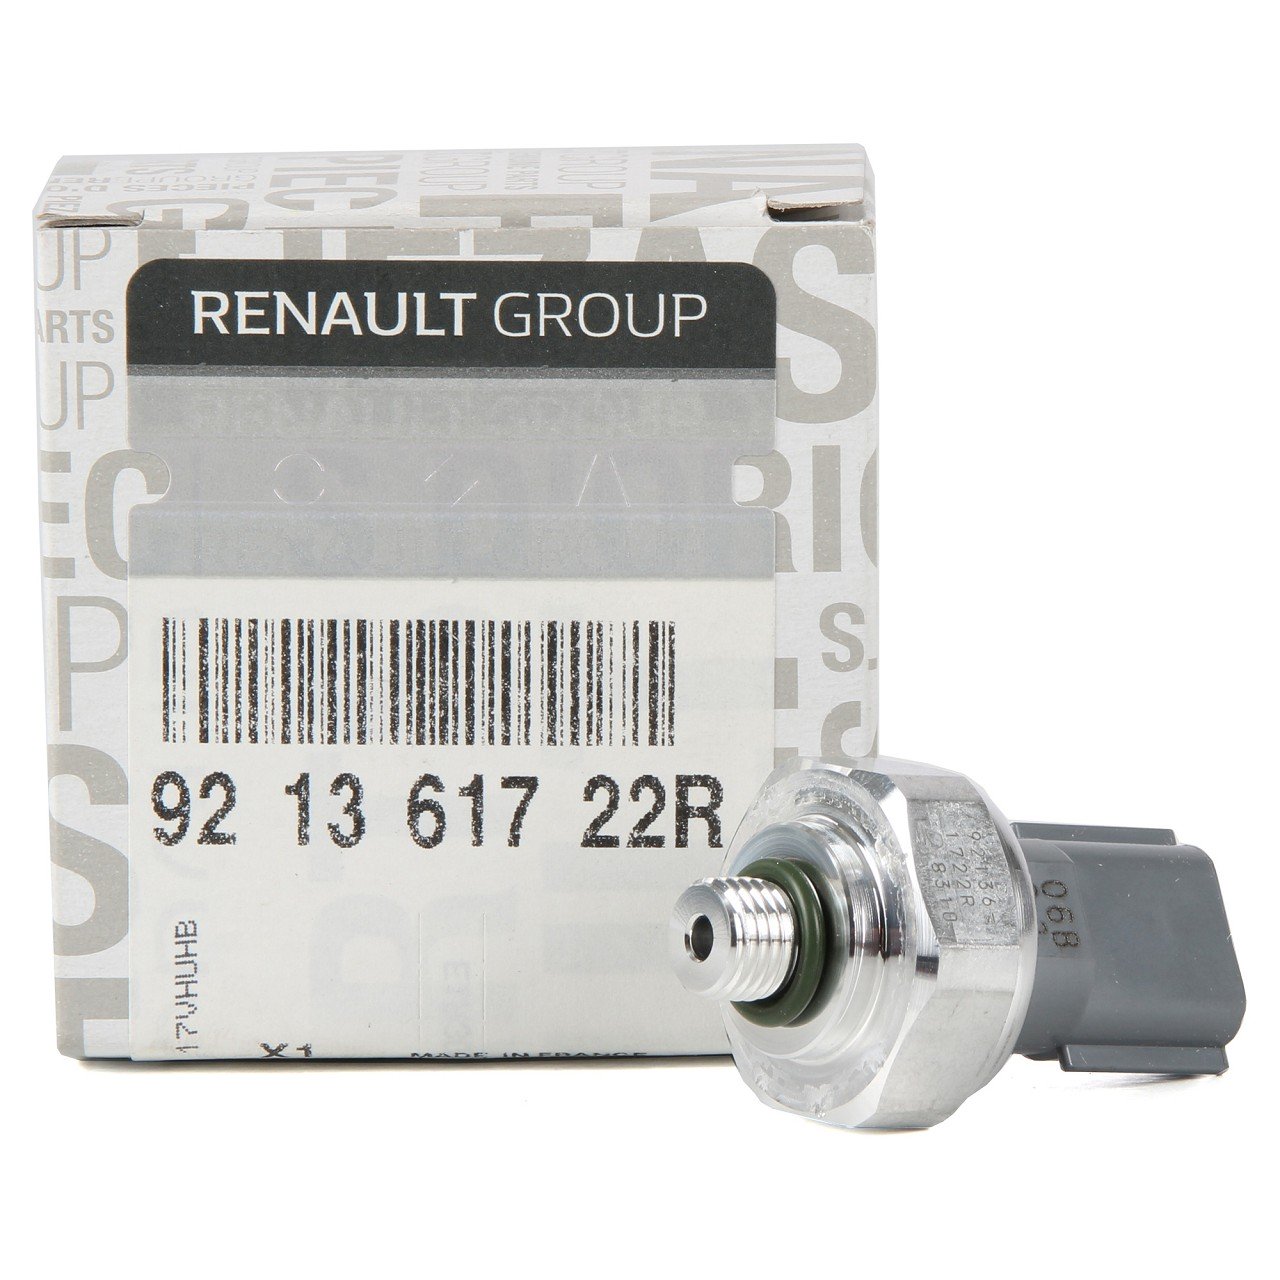 ORIGINAL Renault Druckschalter Klimaanlage CLIO KADJAR SCENIC MEGANE 921361722R